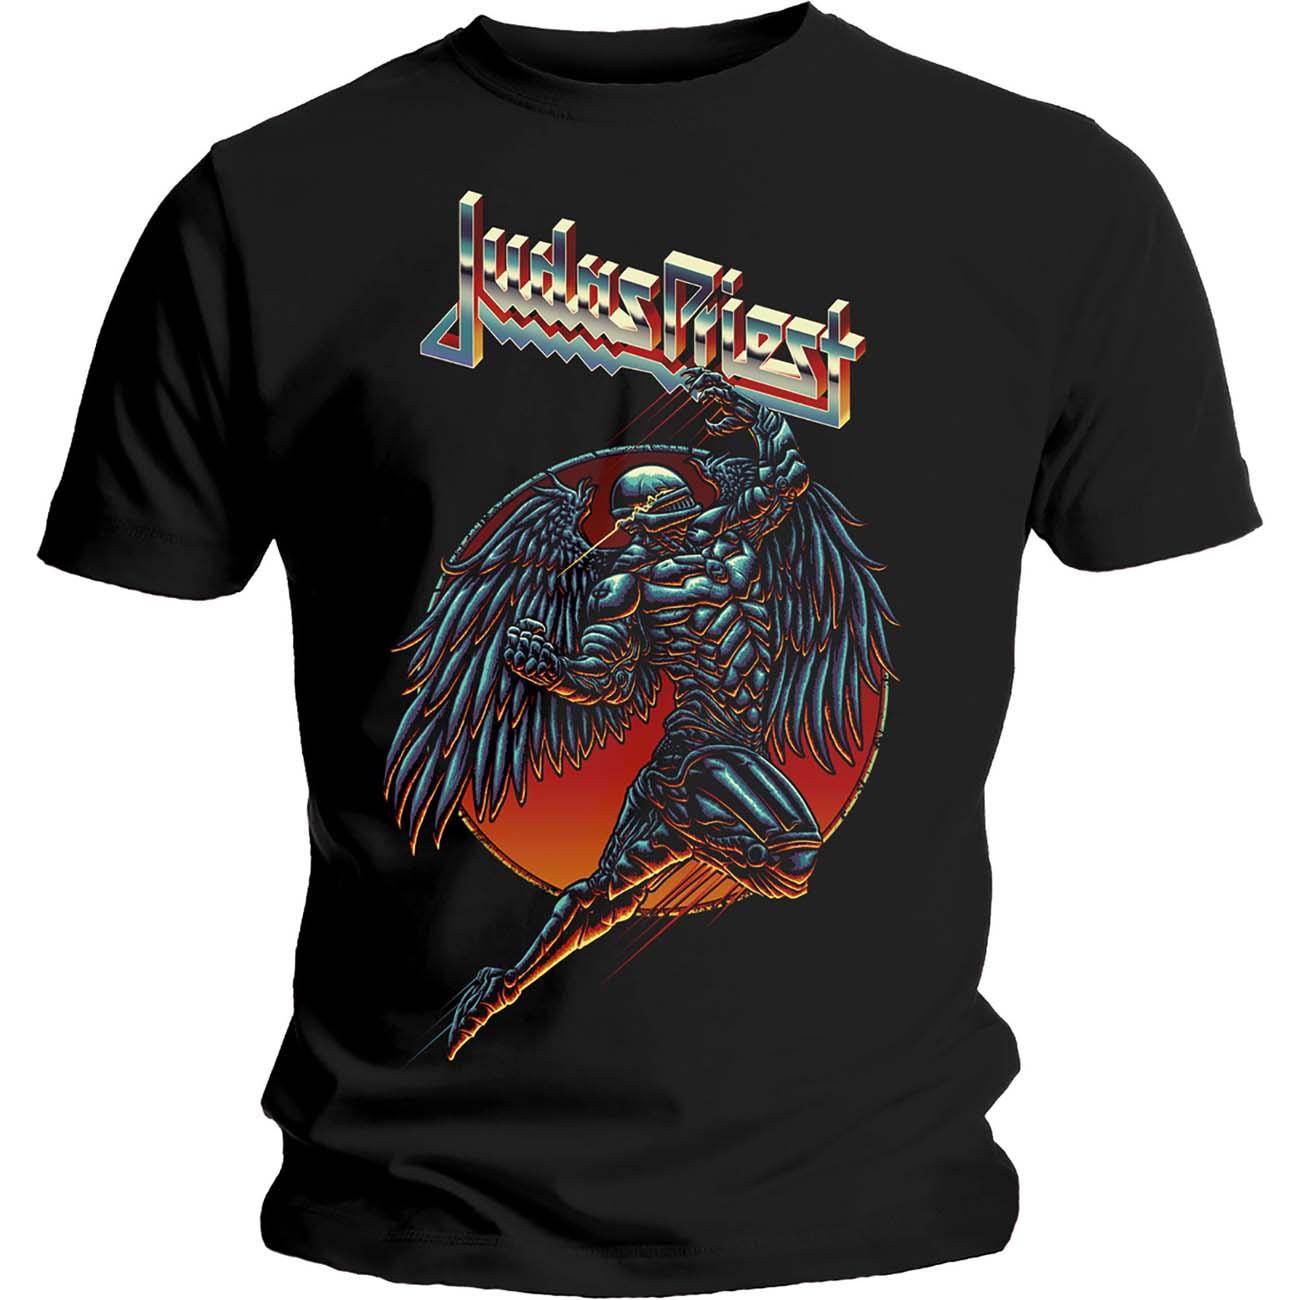 (ジューダス・プリースト) Judas Priest オフィシャル商品 ユニセックス BTD Redeemer Tシャツ コットン 半袖 トップス 